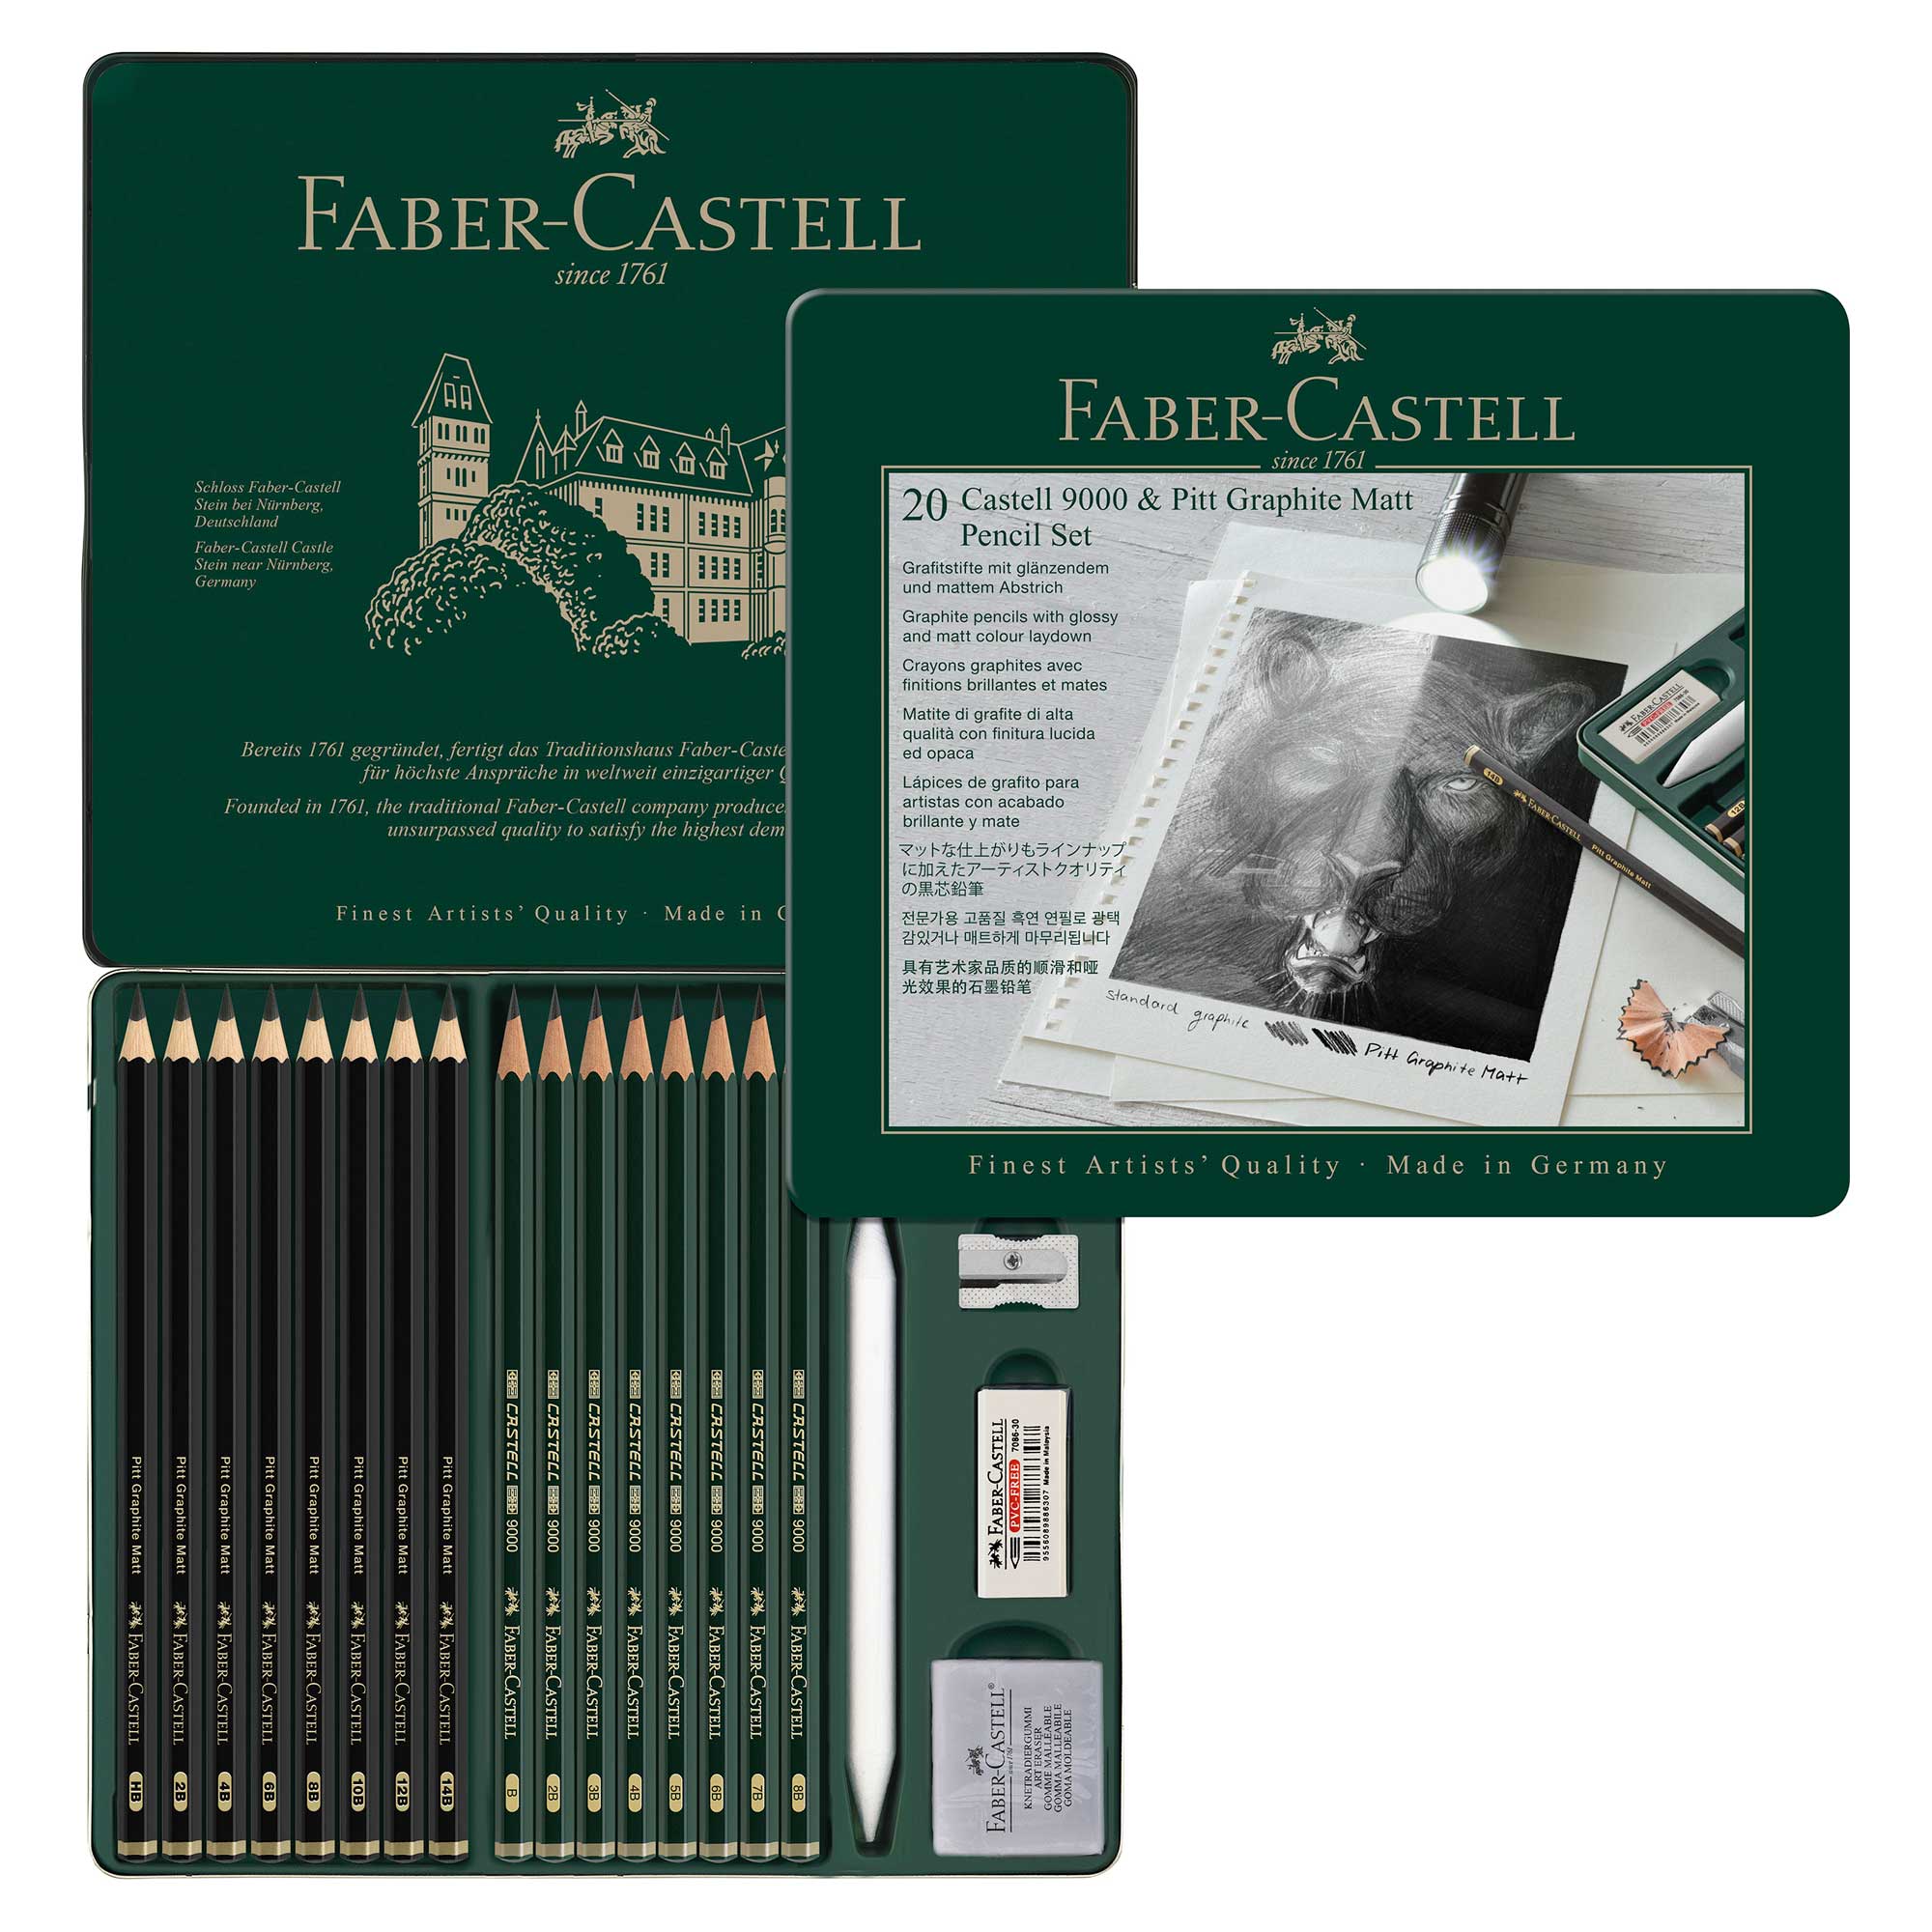 Faber-Castell PITT Graphite Matt & Castell 9000 Pencil Set of 20